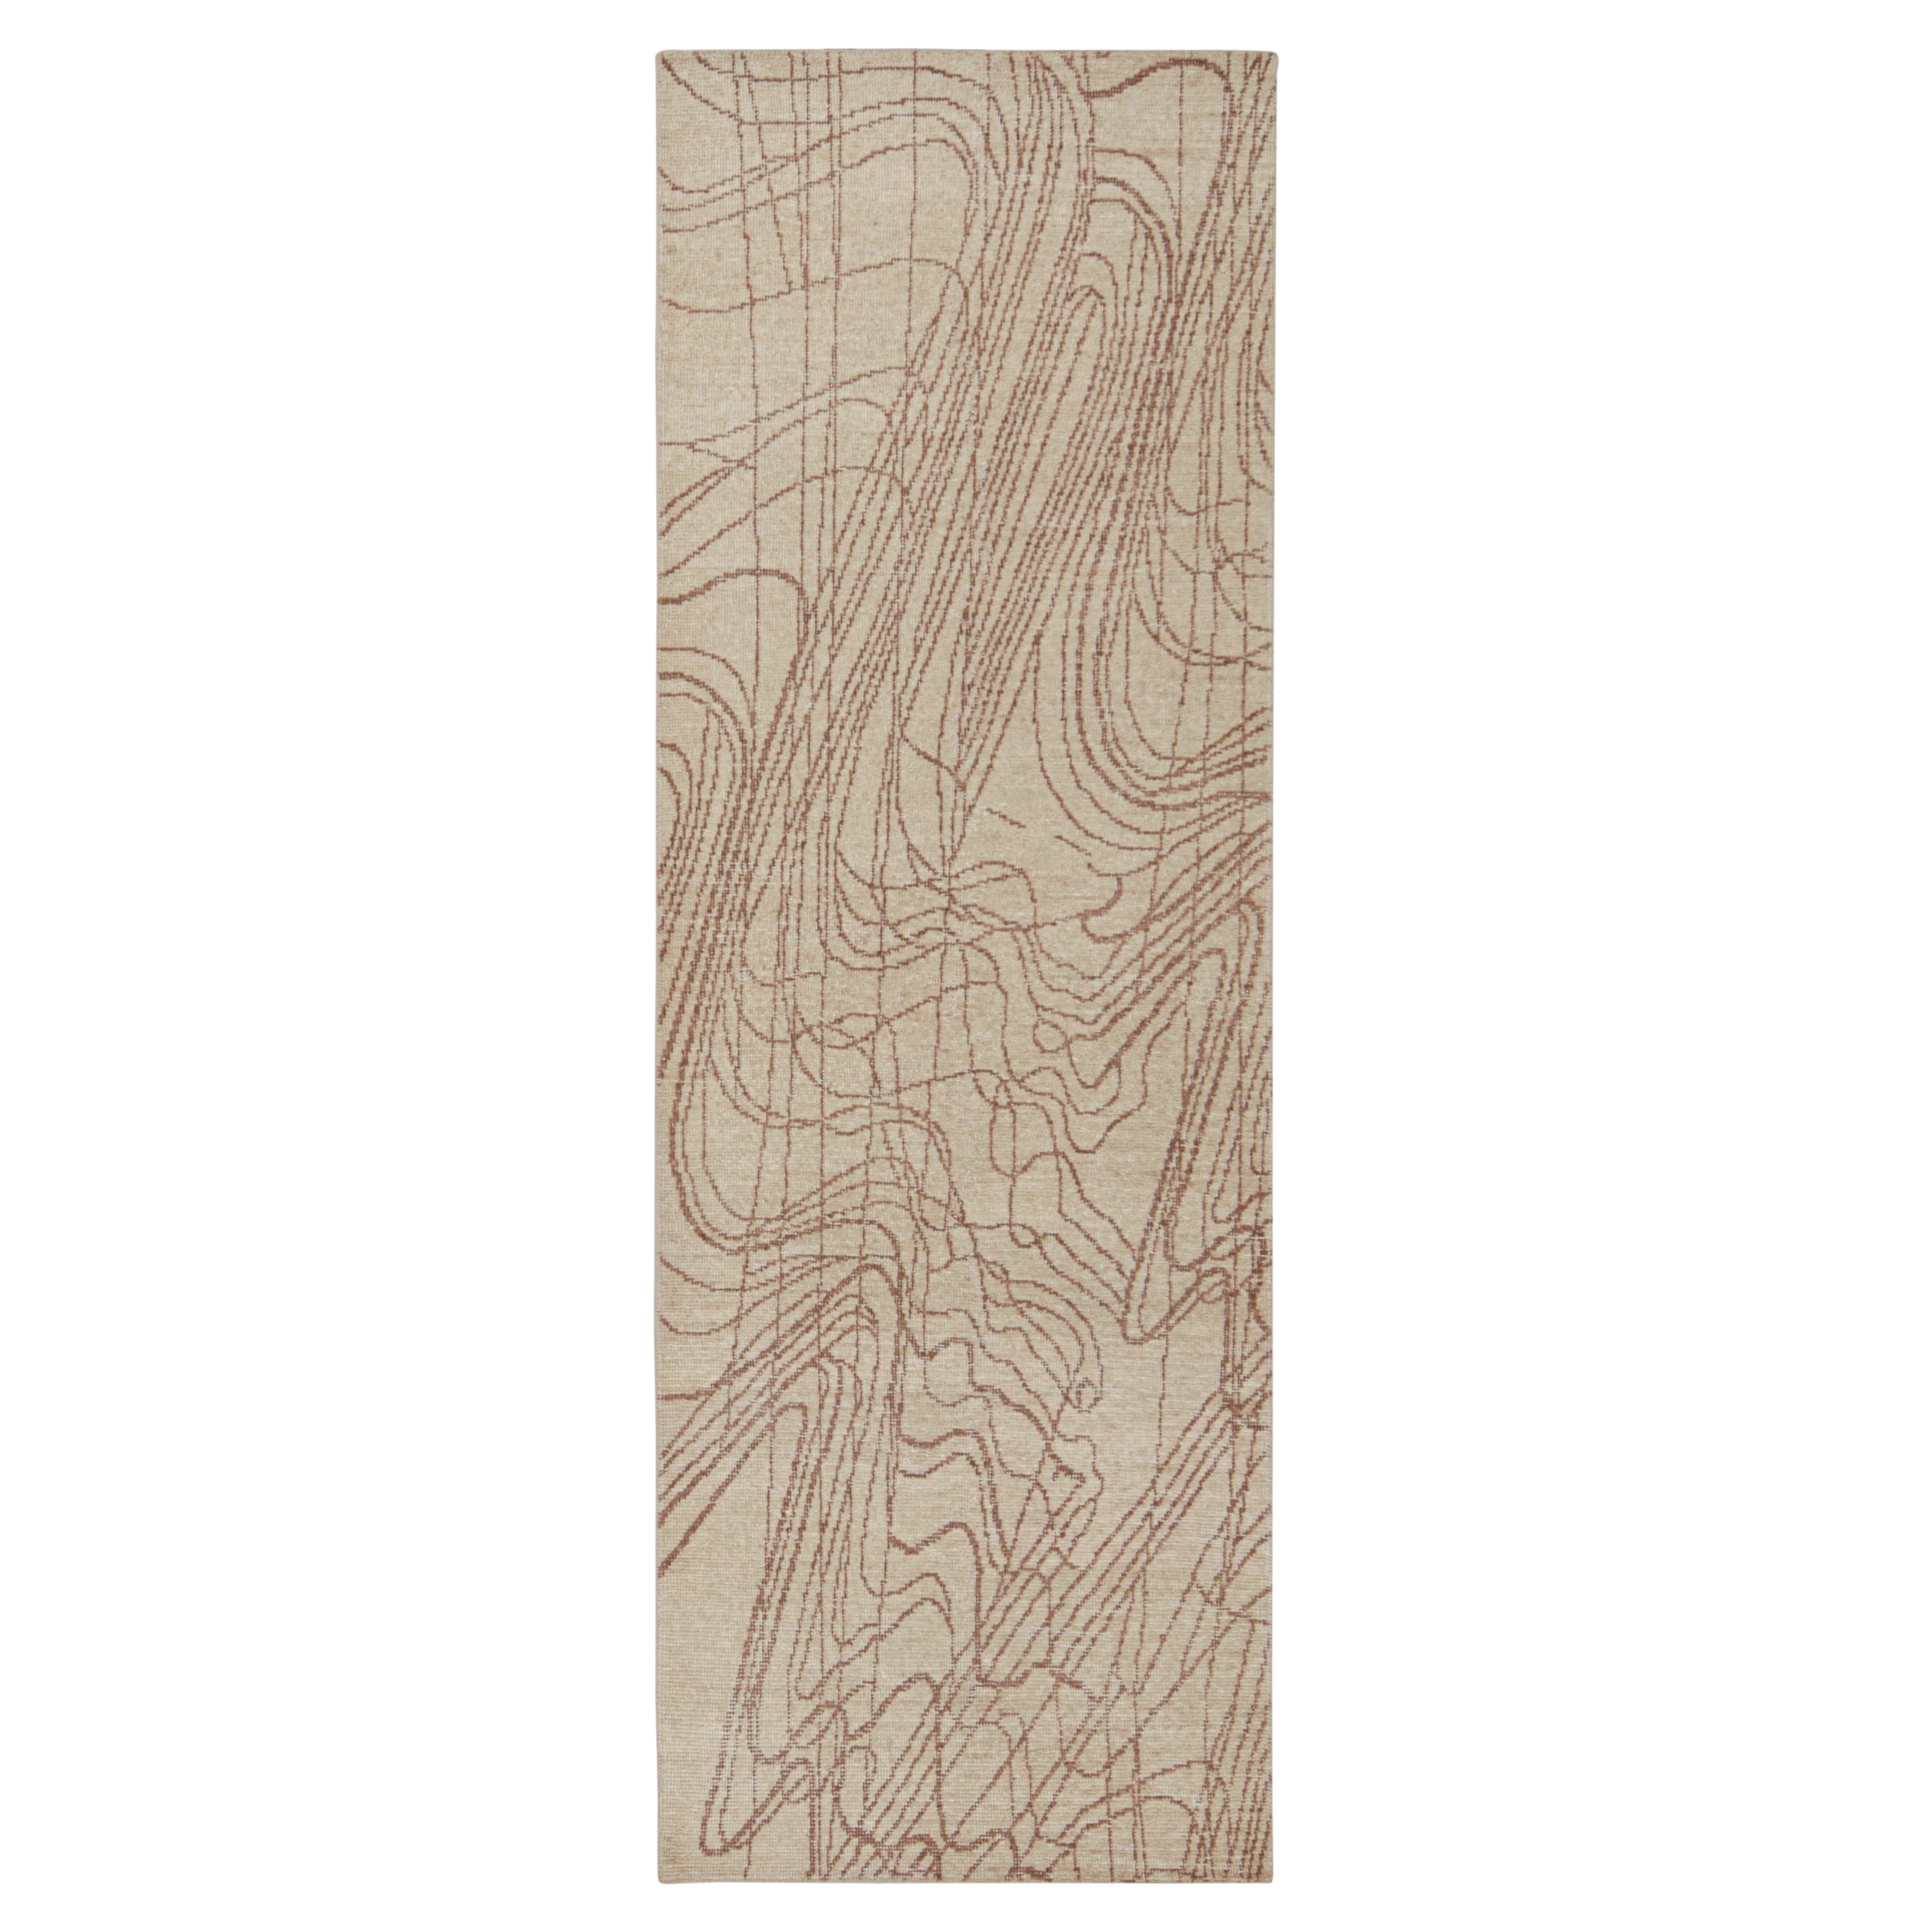 Abstrakter Lufer im Distressed-Stil von Rug & Kilim in Beige-Braun mit geometrischem Muster